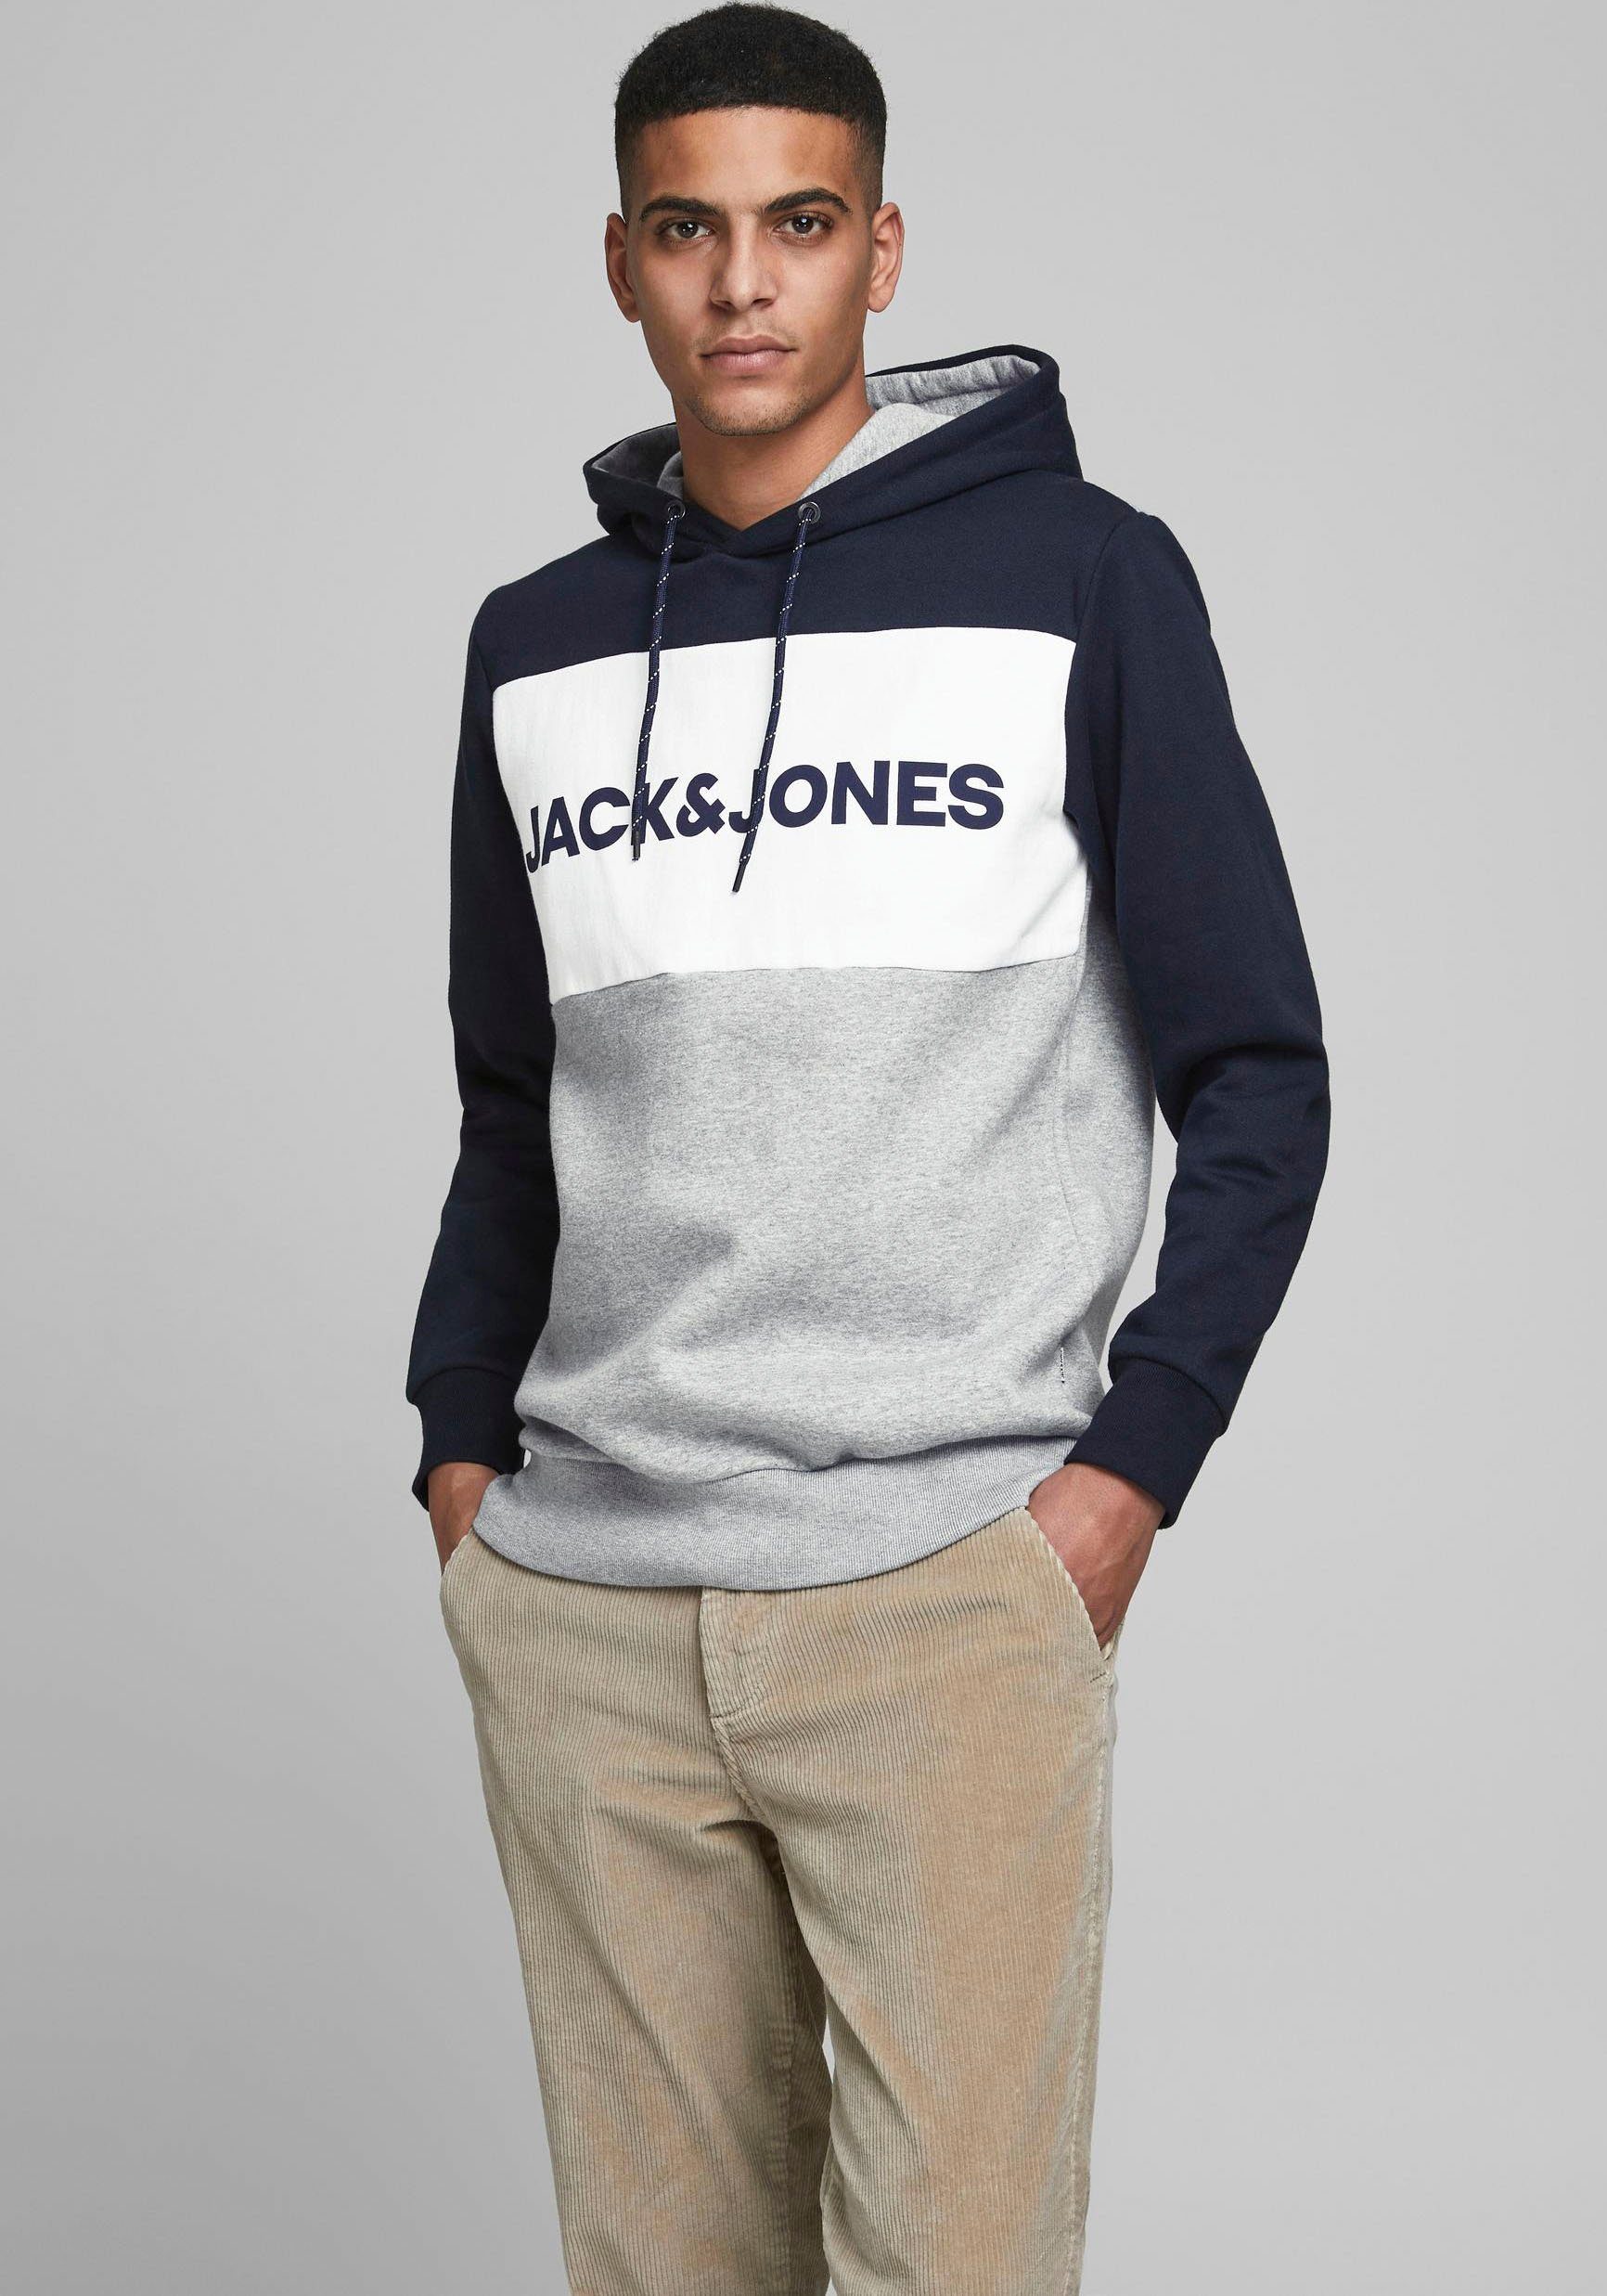 Jack & Jones Herren Sweatshirts online kaufen | OTTO